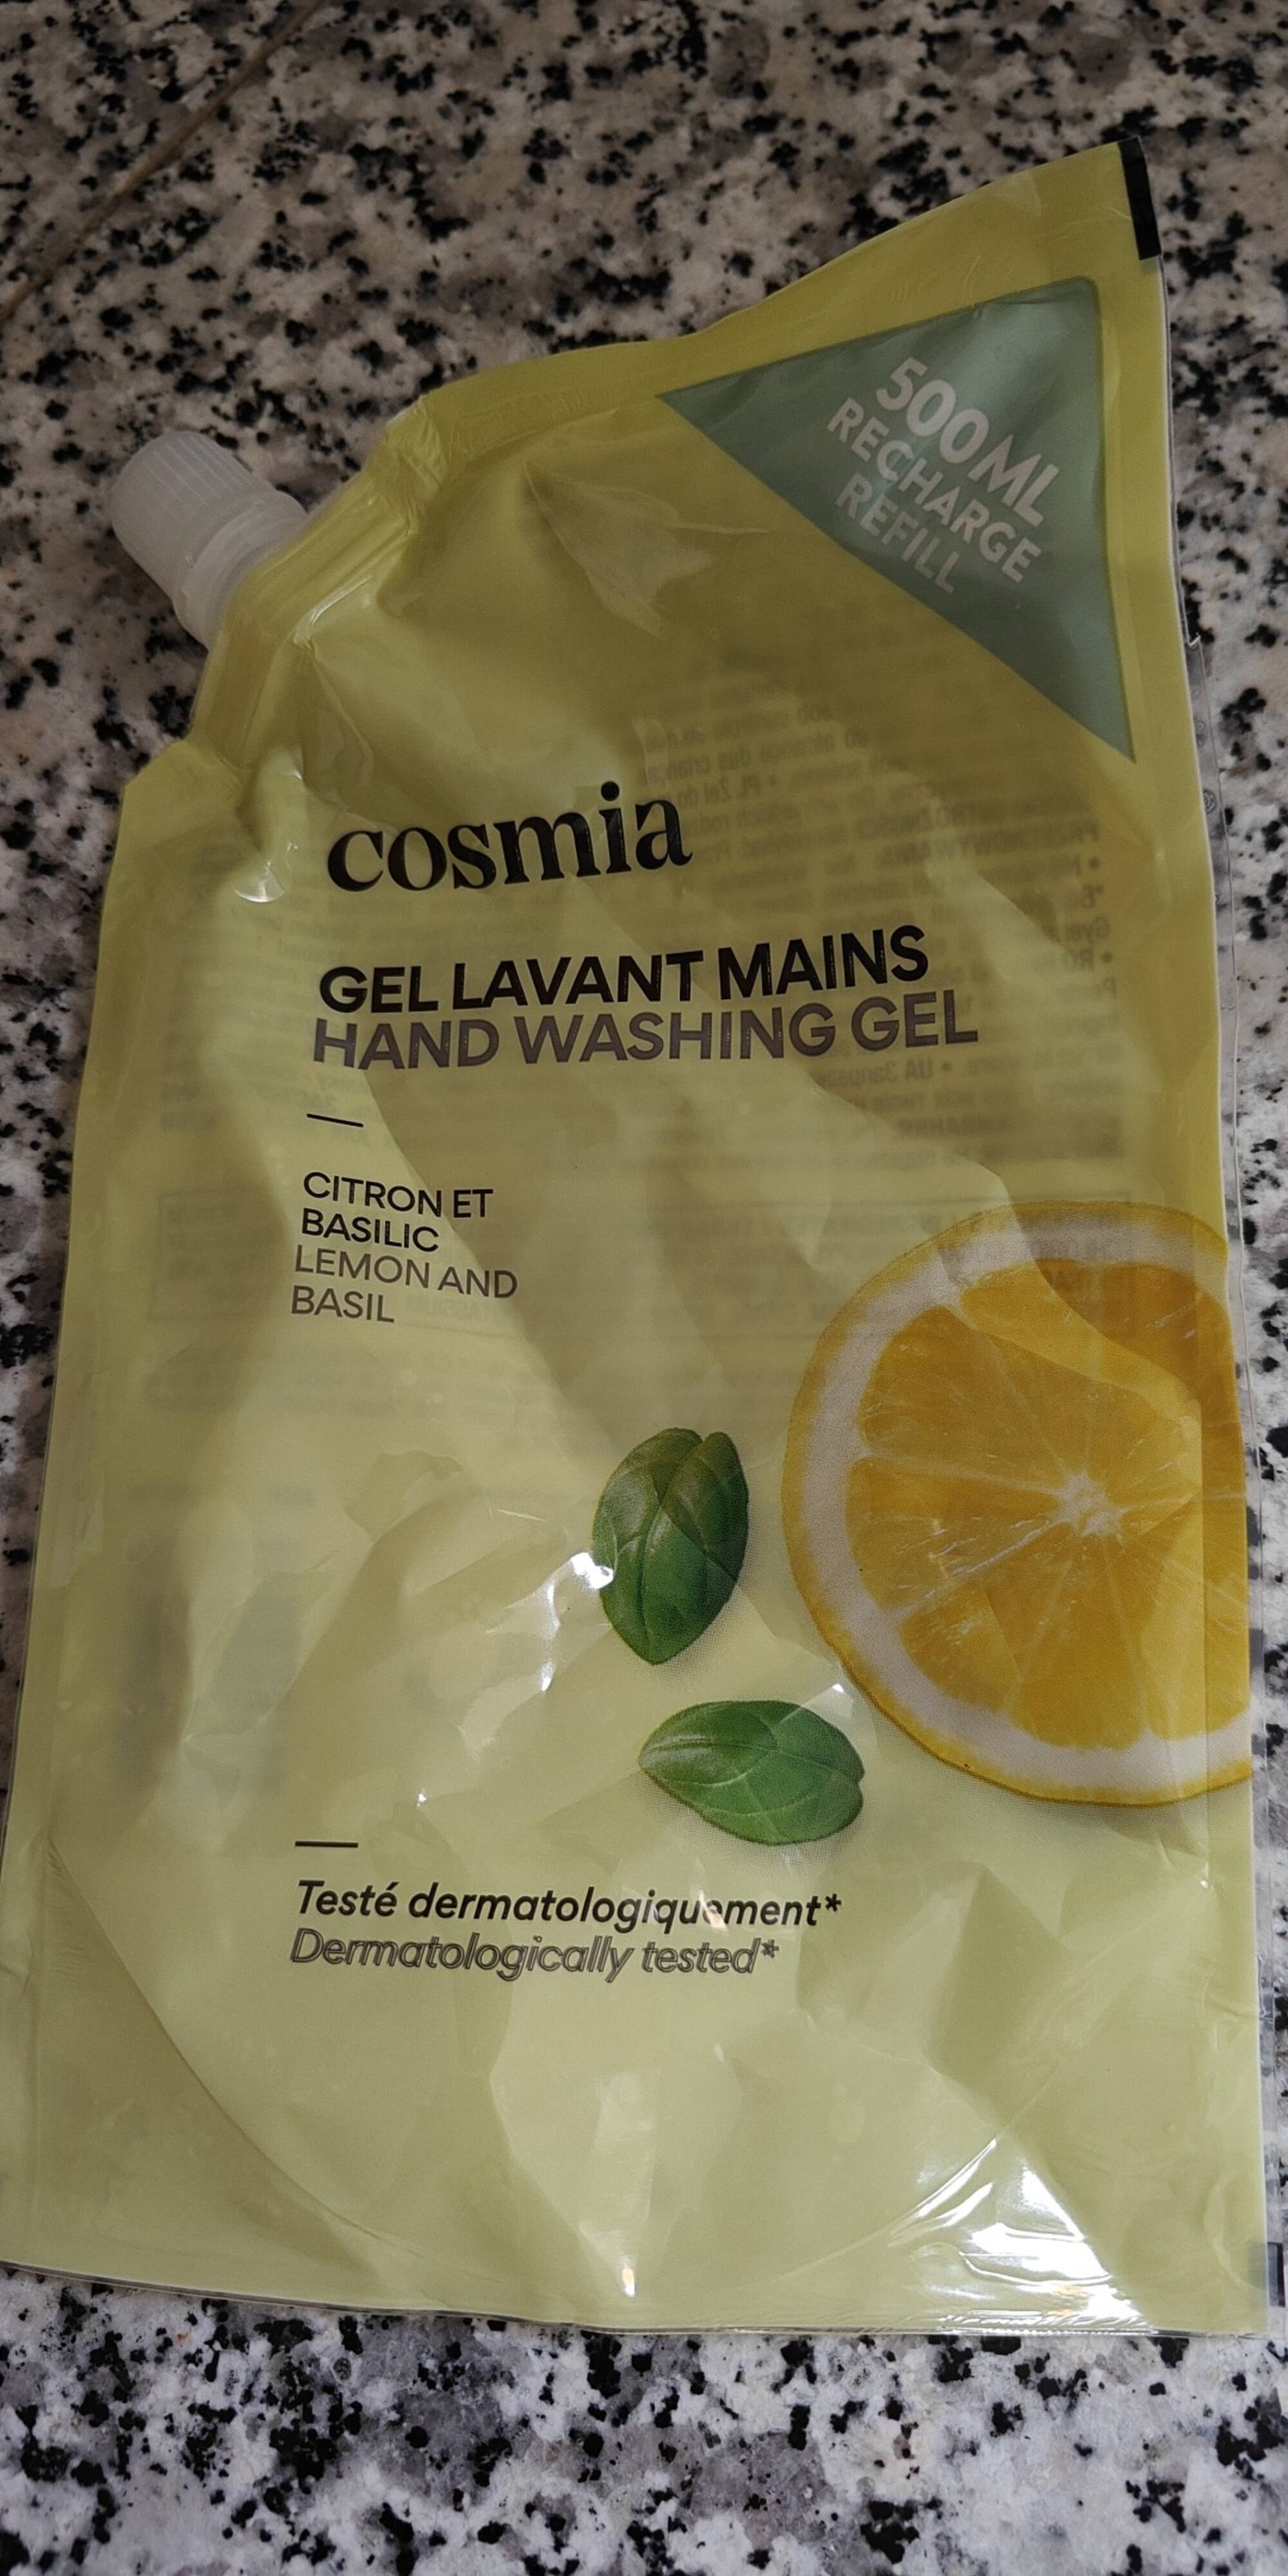 COSMIA - Citron et basilic - Gel lavant mains